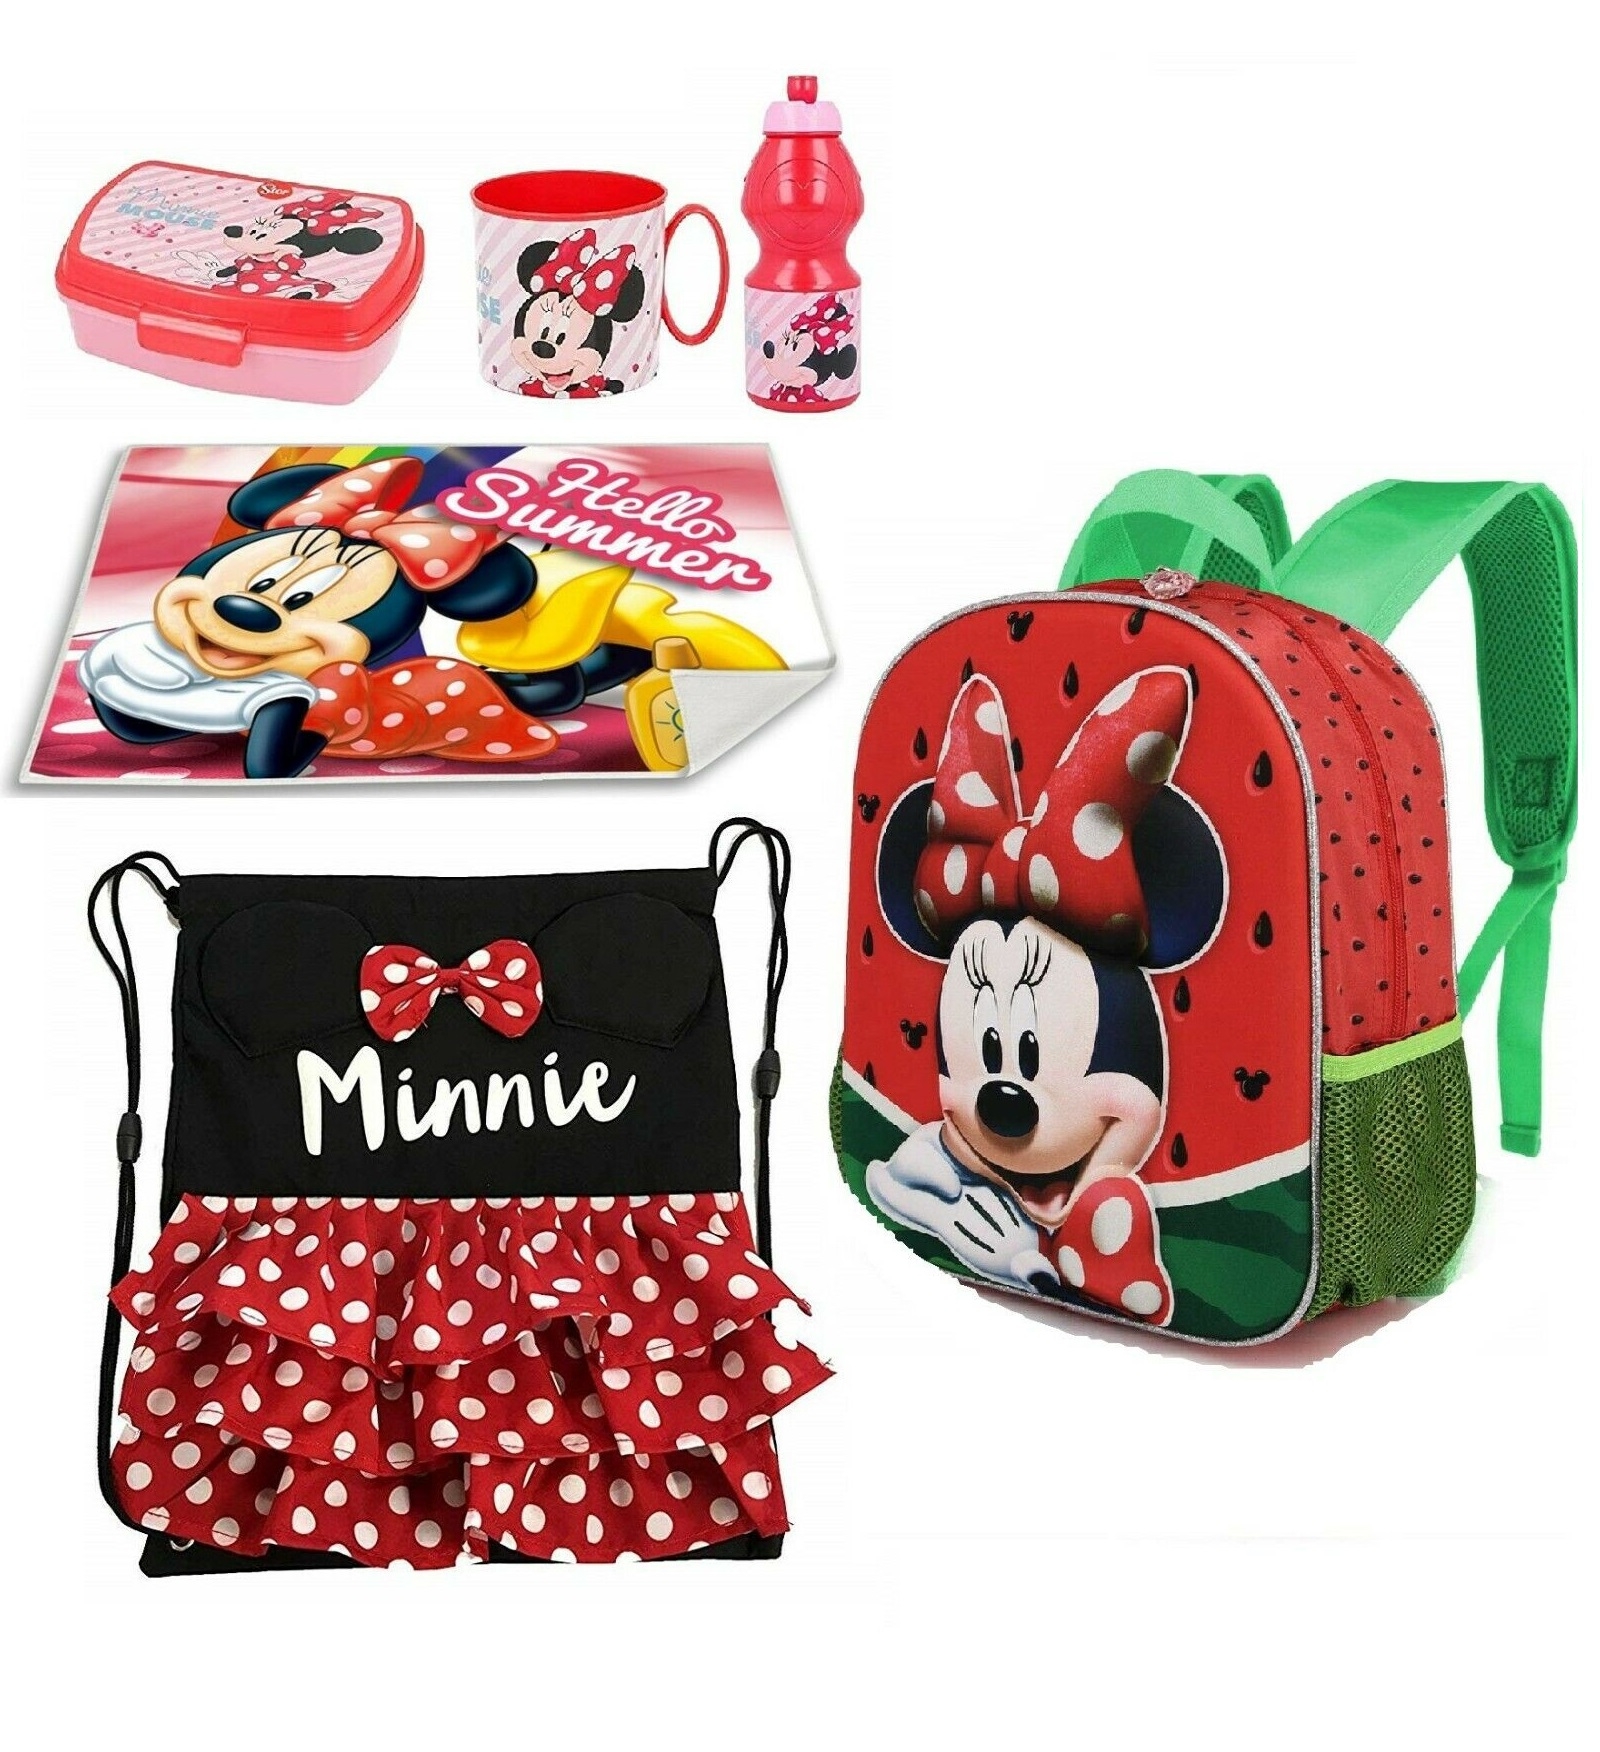 Estuche doble cremallera de Minnie Mouse Bambini Occorrente per la scuola Occorrente per la scuola Disney Occorrente per la scuola 